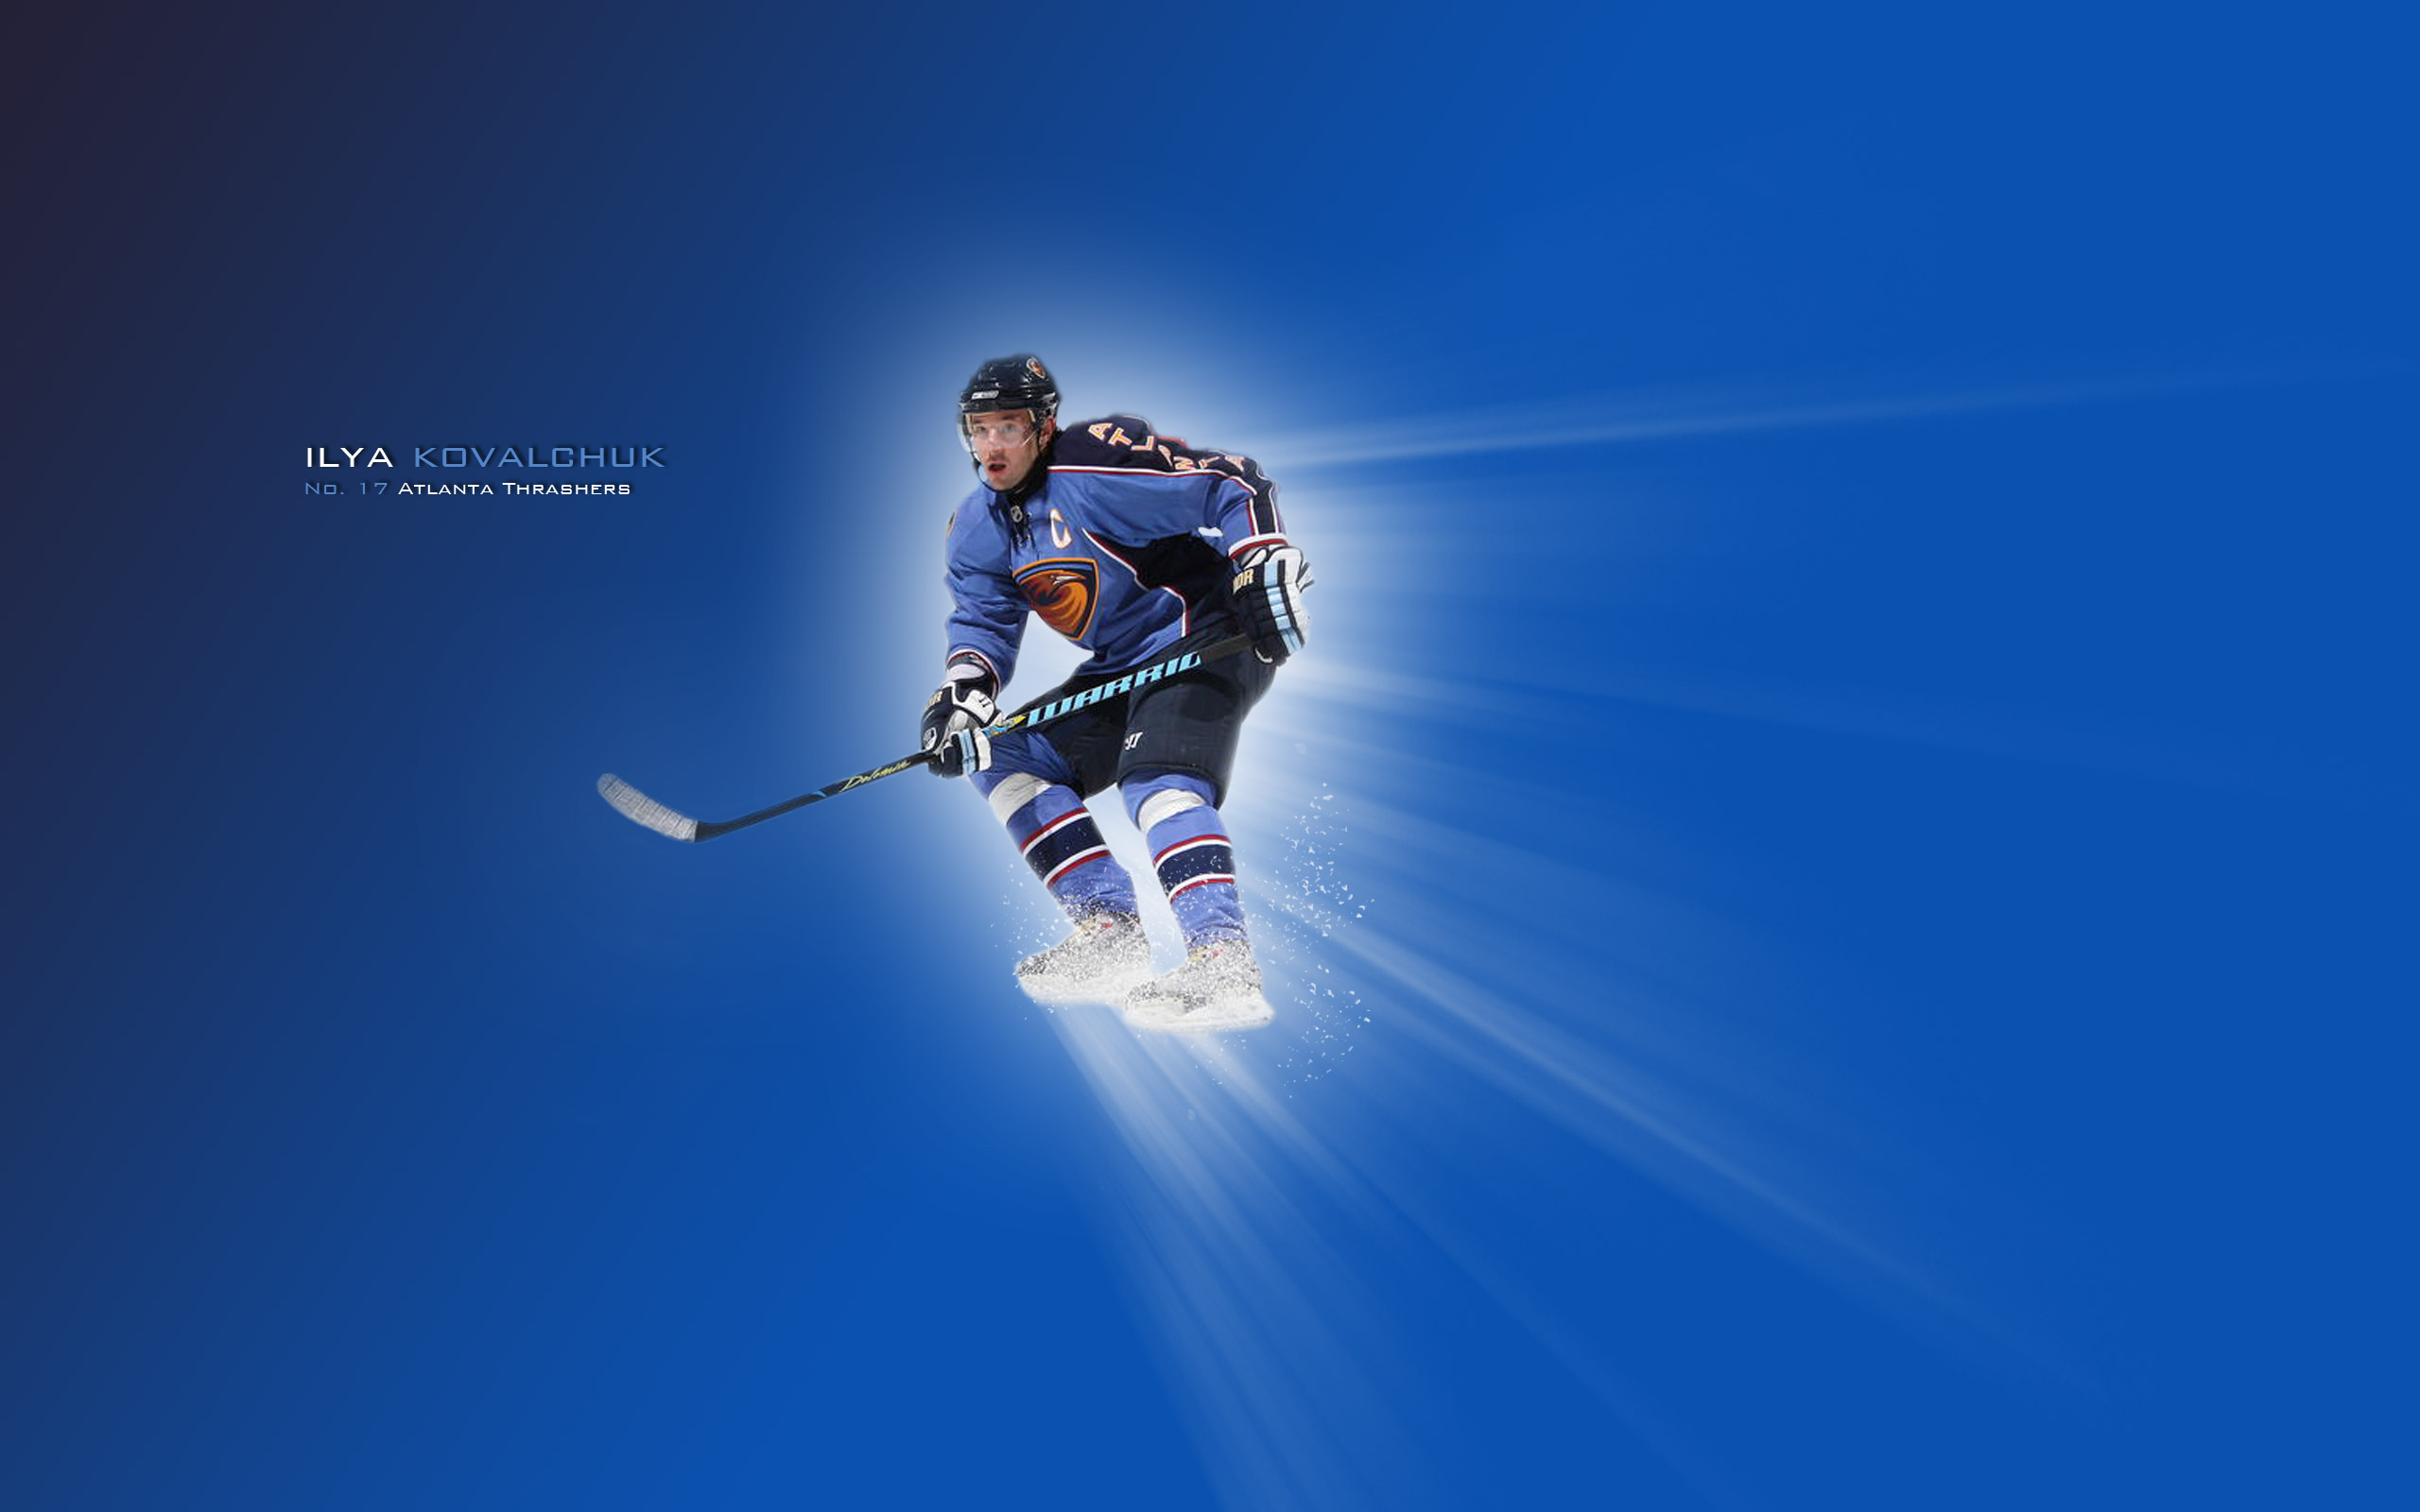 Wallpaper Hockey Photo For Desktop